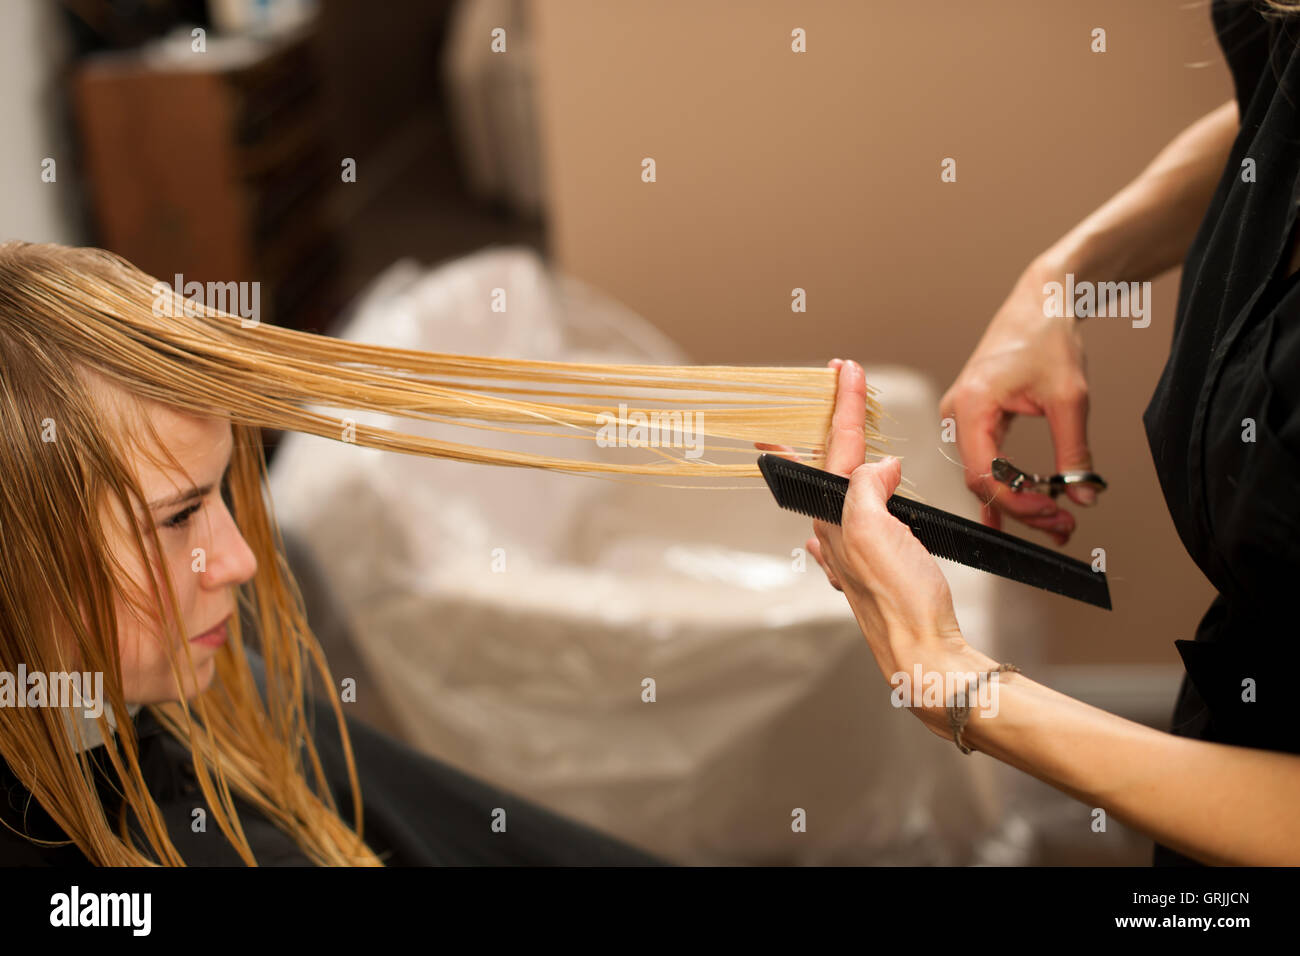 Friseur am Arbeitsplatz - Friseur Haare schneiden an den Kunden zuvor Frisur in einem professionellen salon Stockfoto